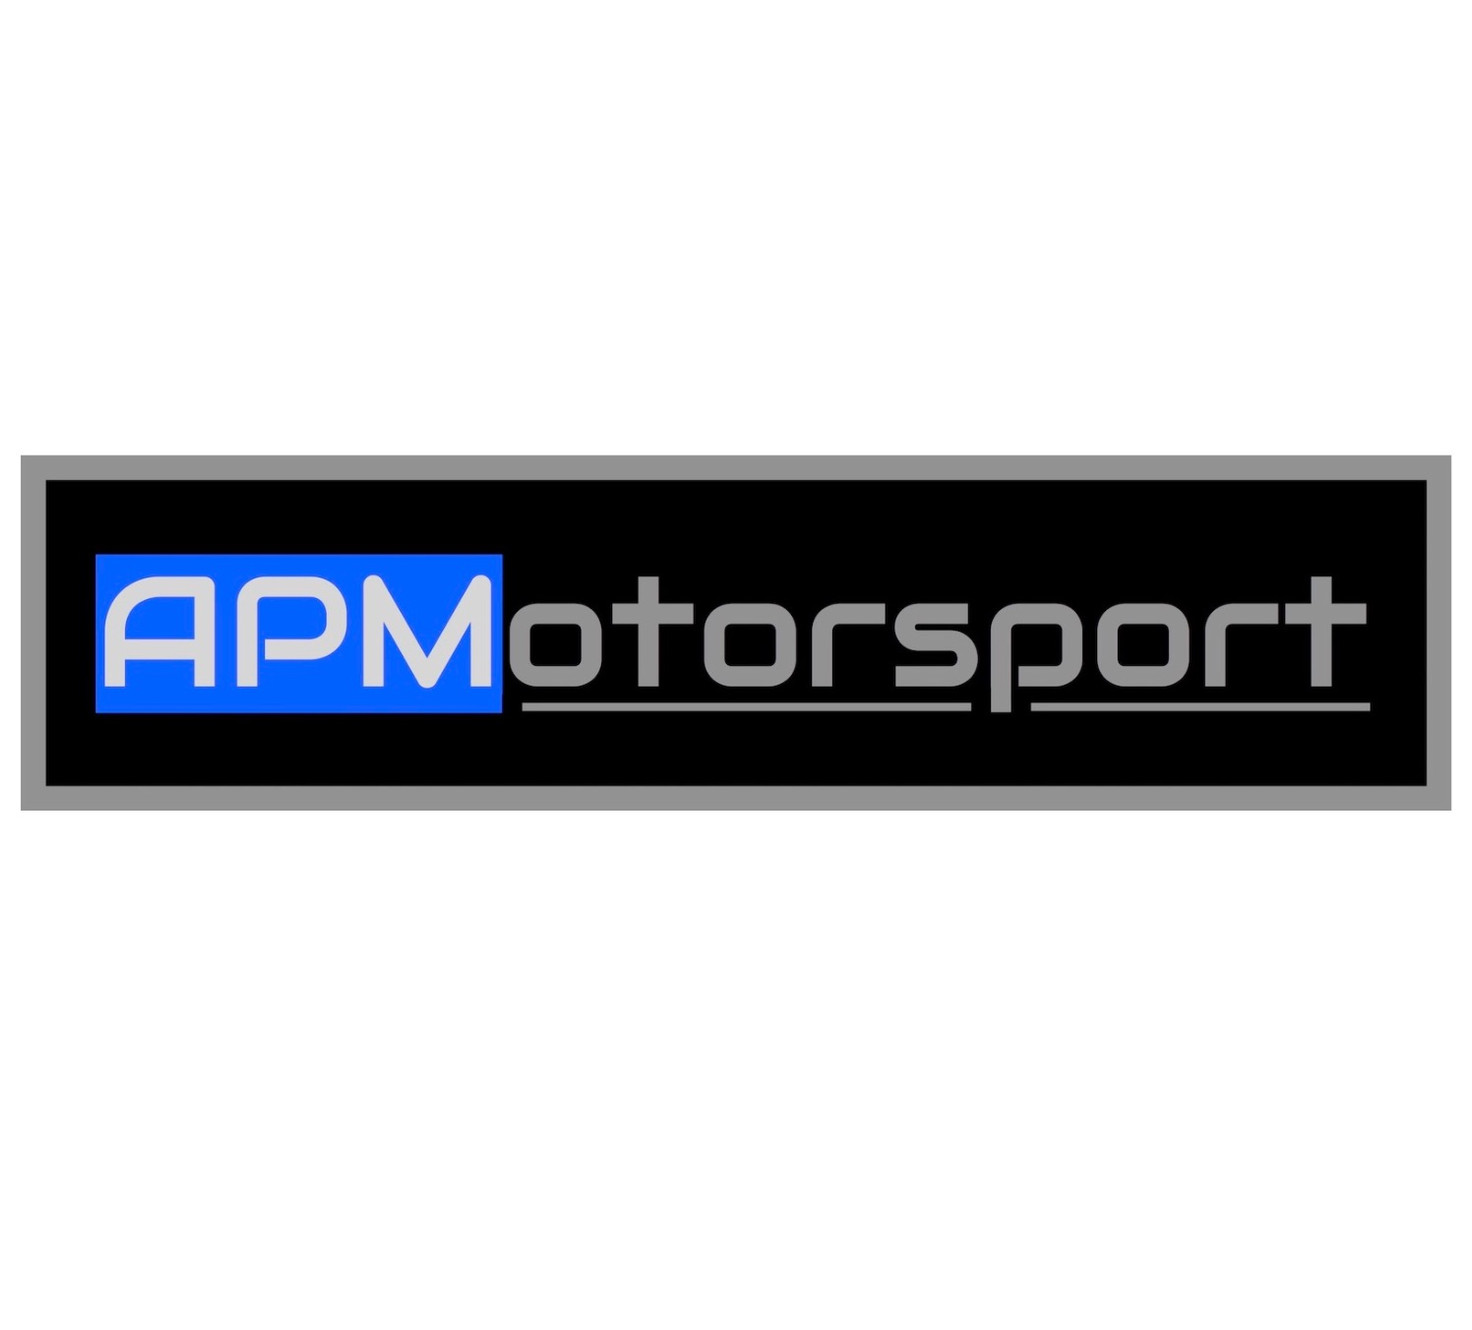 www.apmotorsport.co.uk